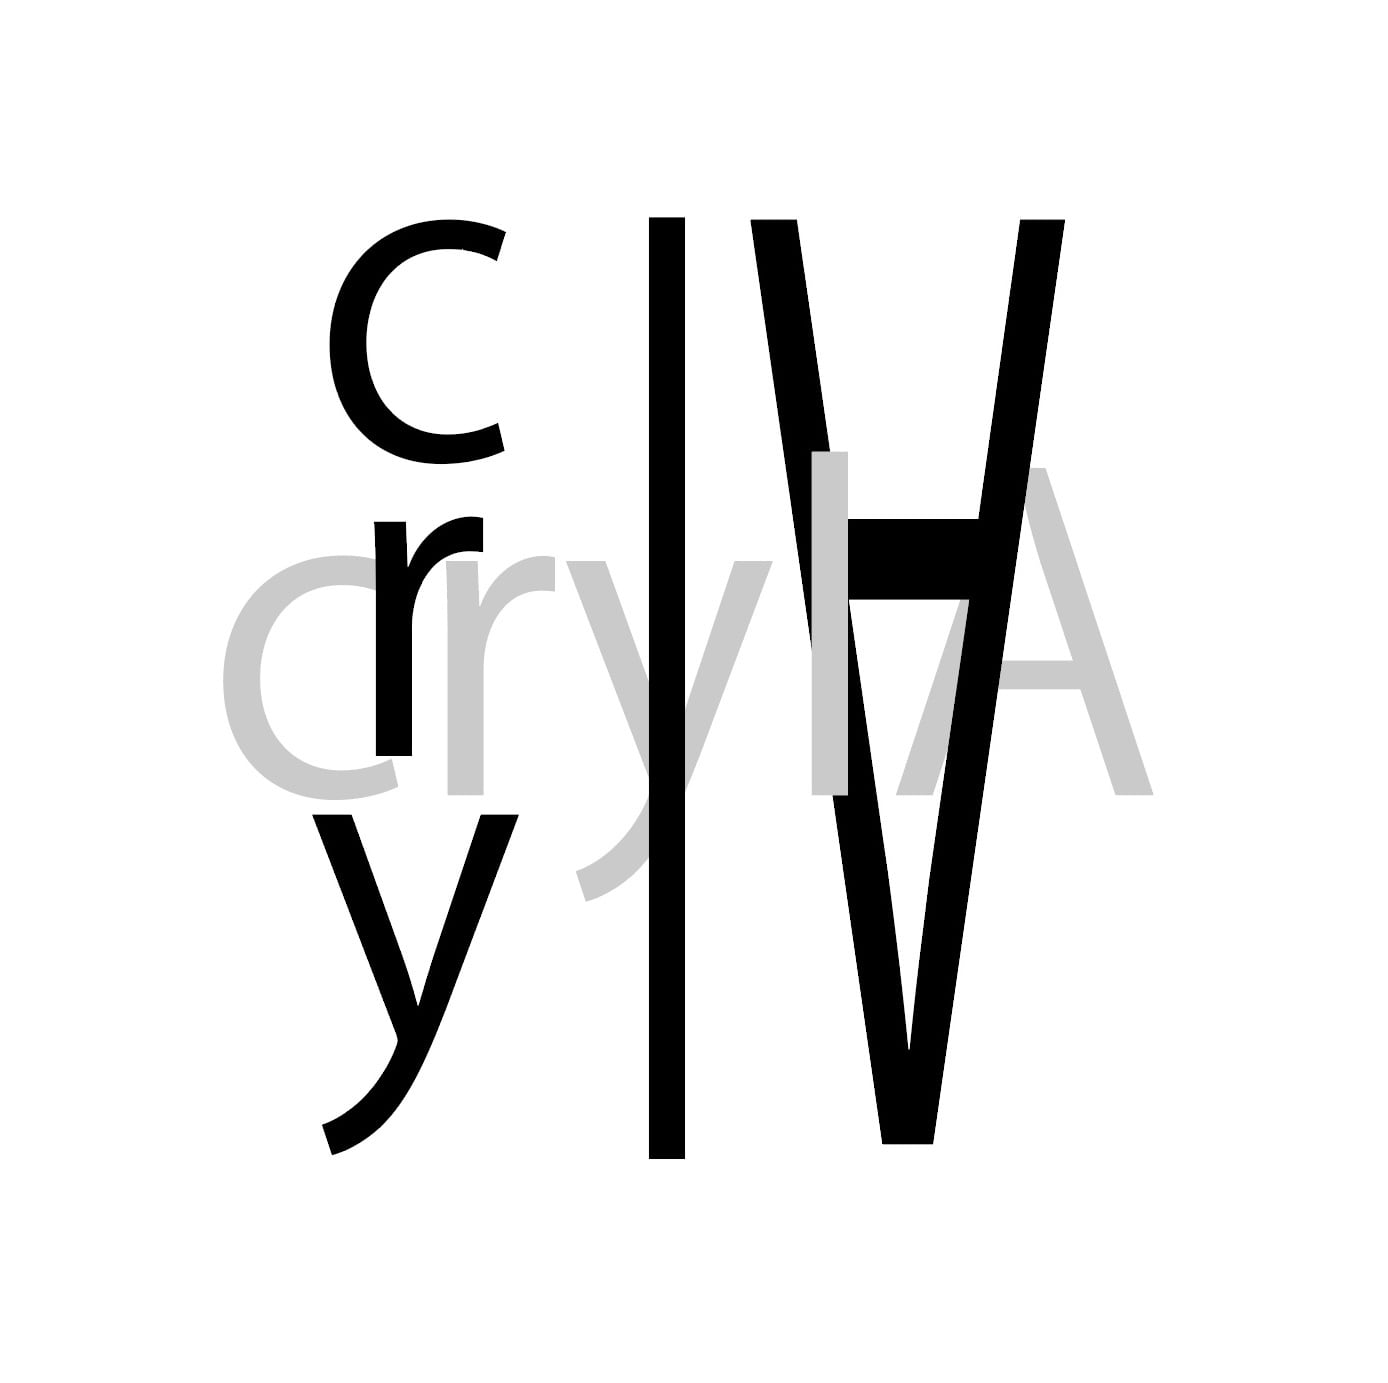 オリジナルオーダーメイドギフトの通販サイトcrylA / クリラ